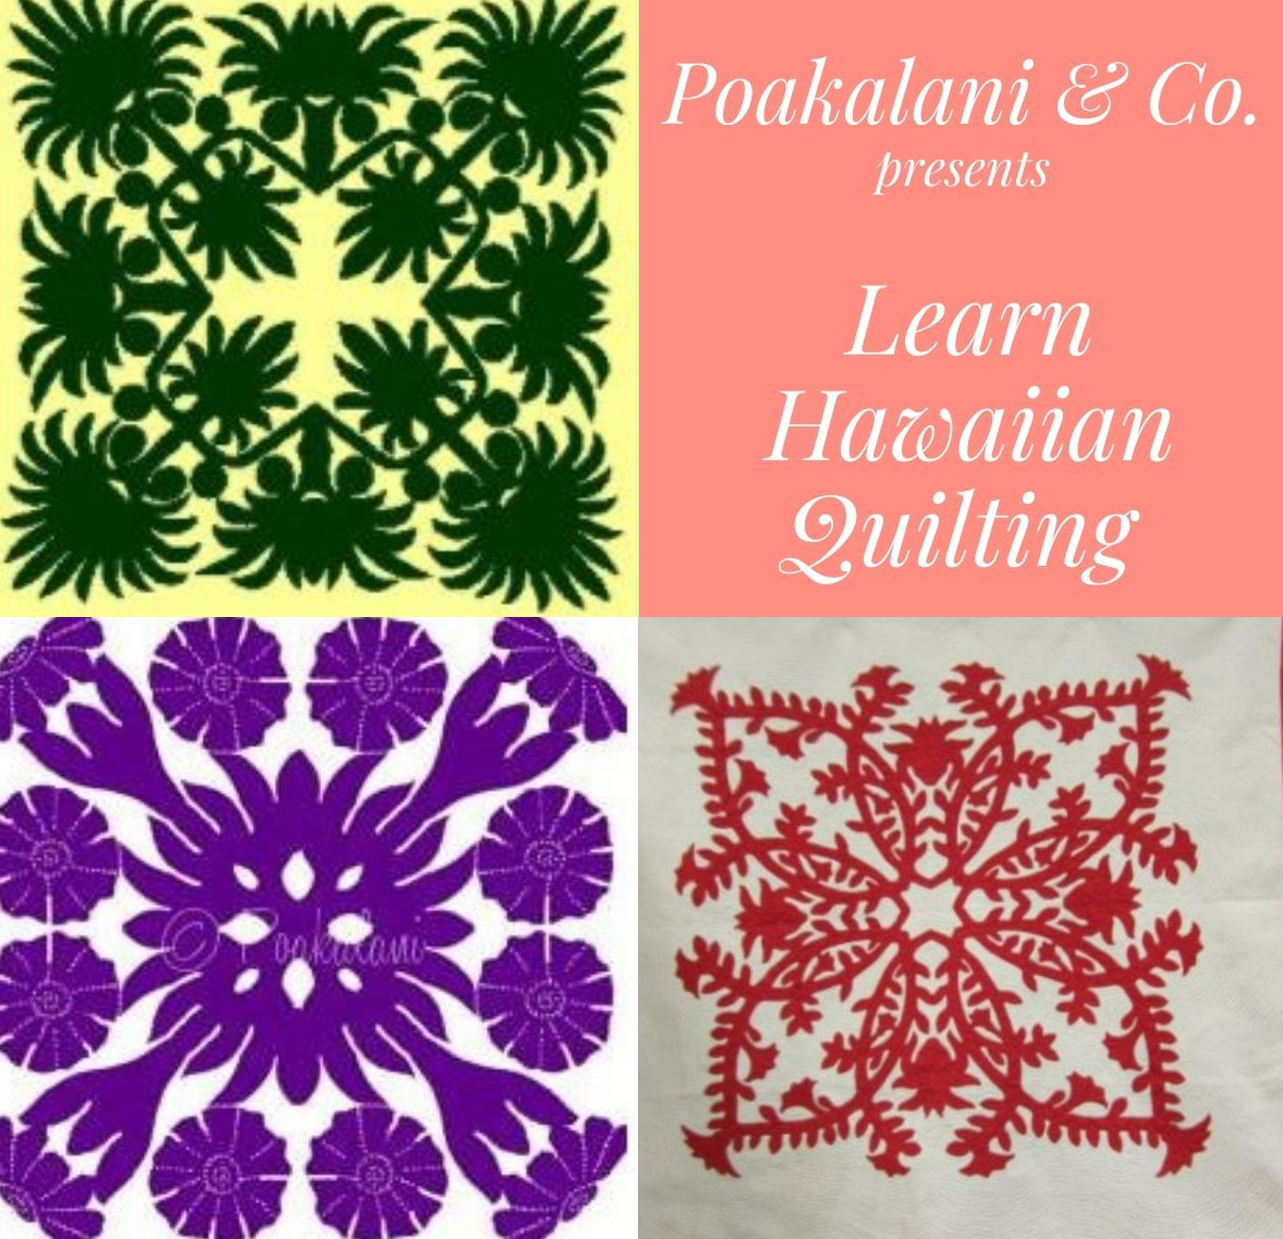 Hawaiian Quilting With Poakalani & Co.